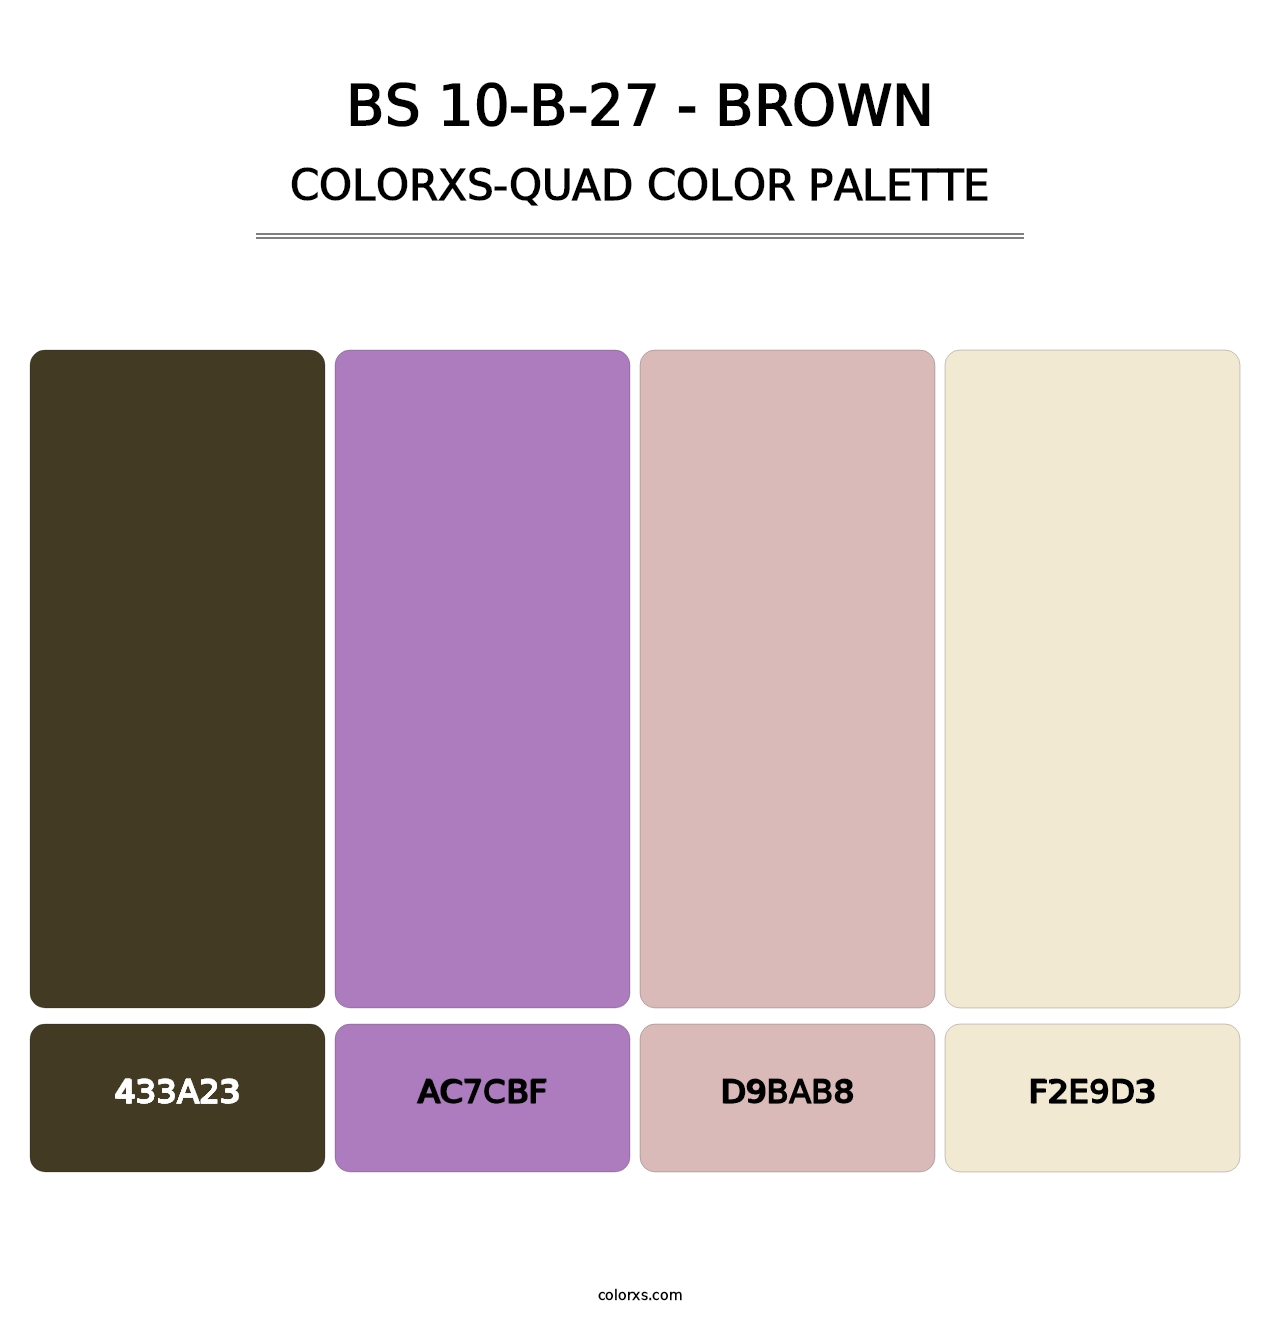 BS 10-B-27 - Brown - Colorxs Quad Palette